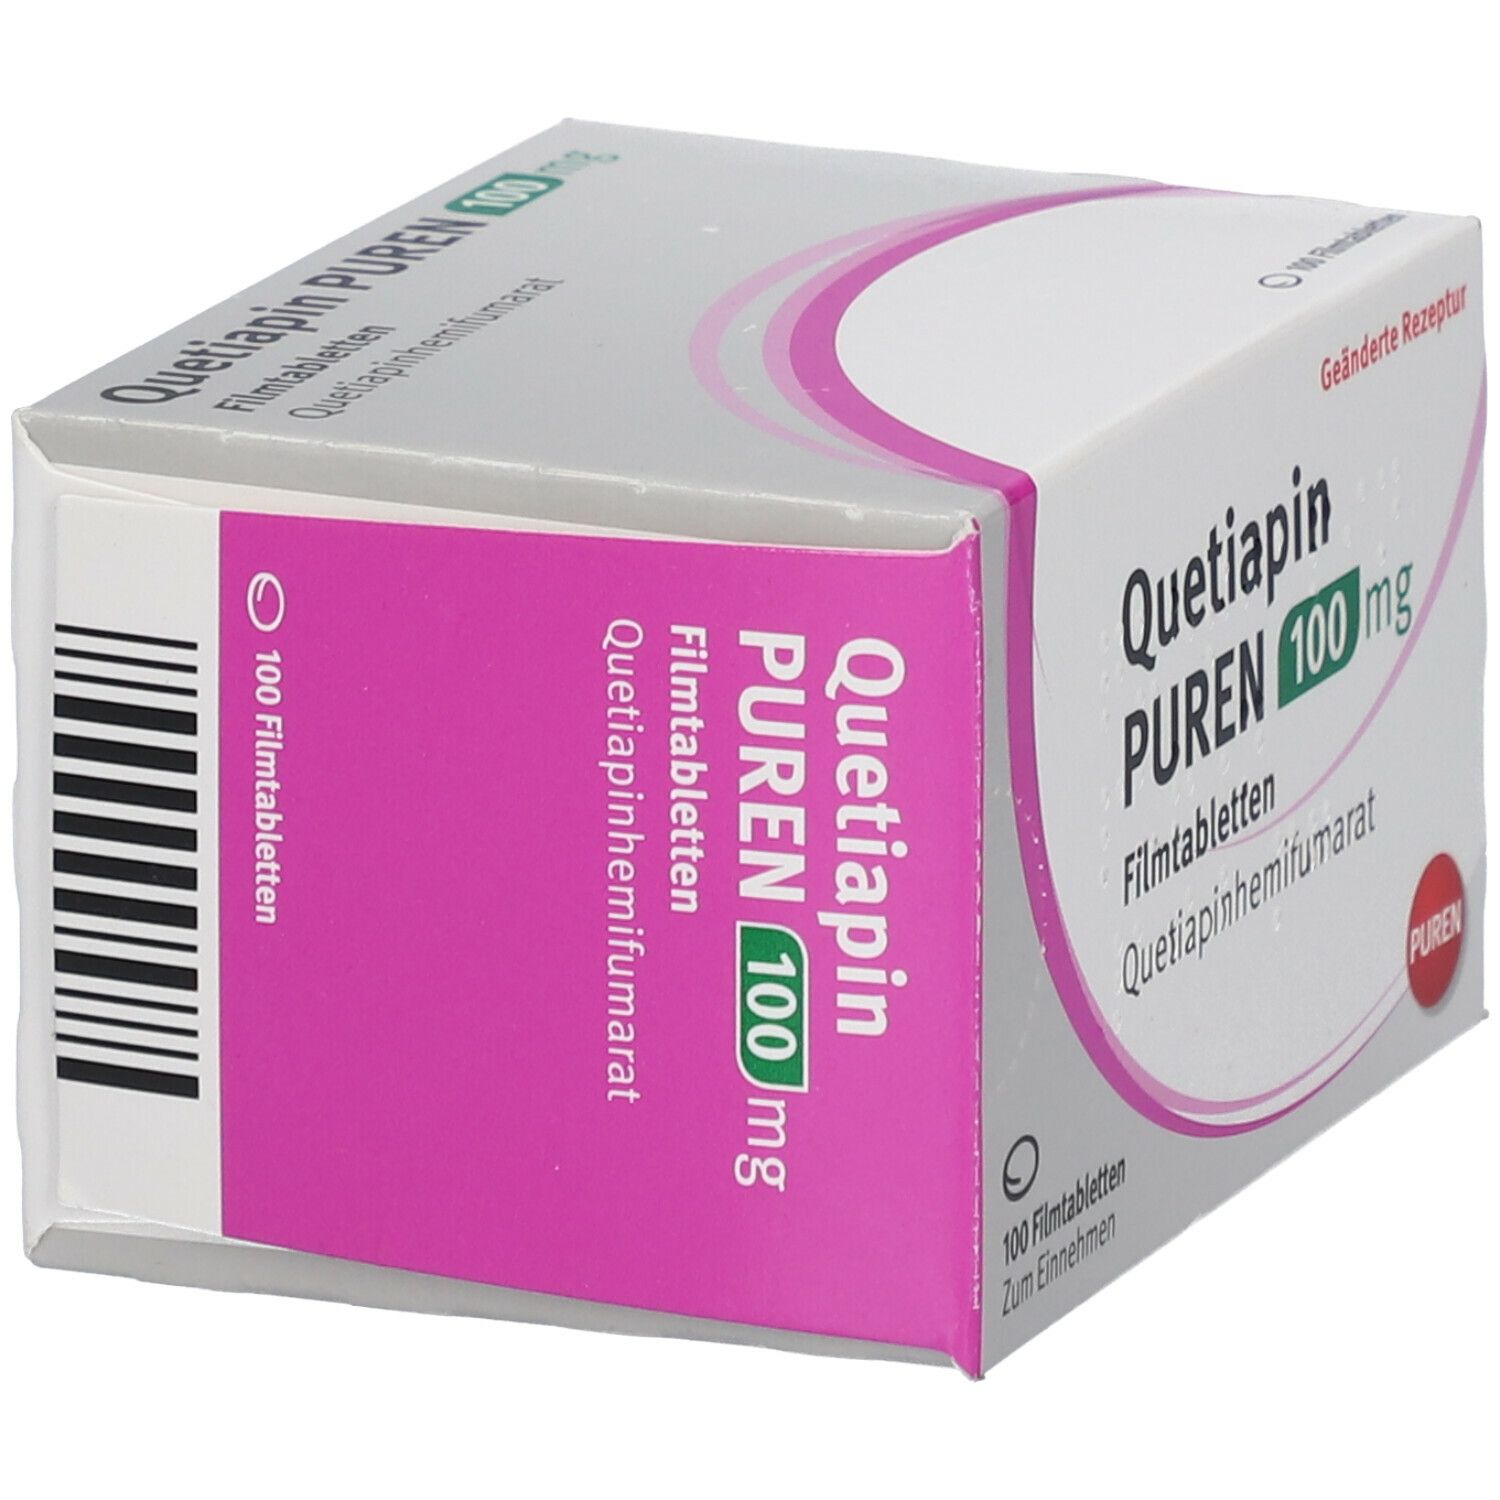 Quetiapin PUREN 100 mg